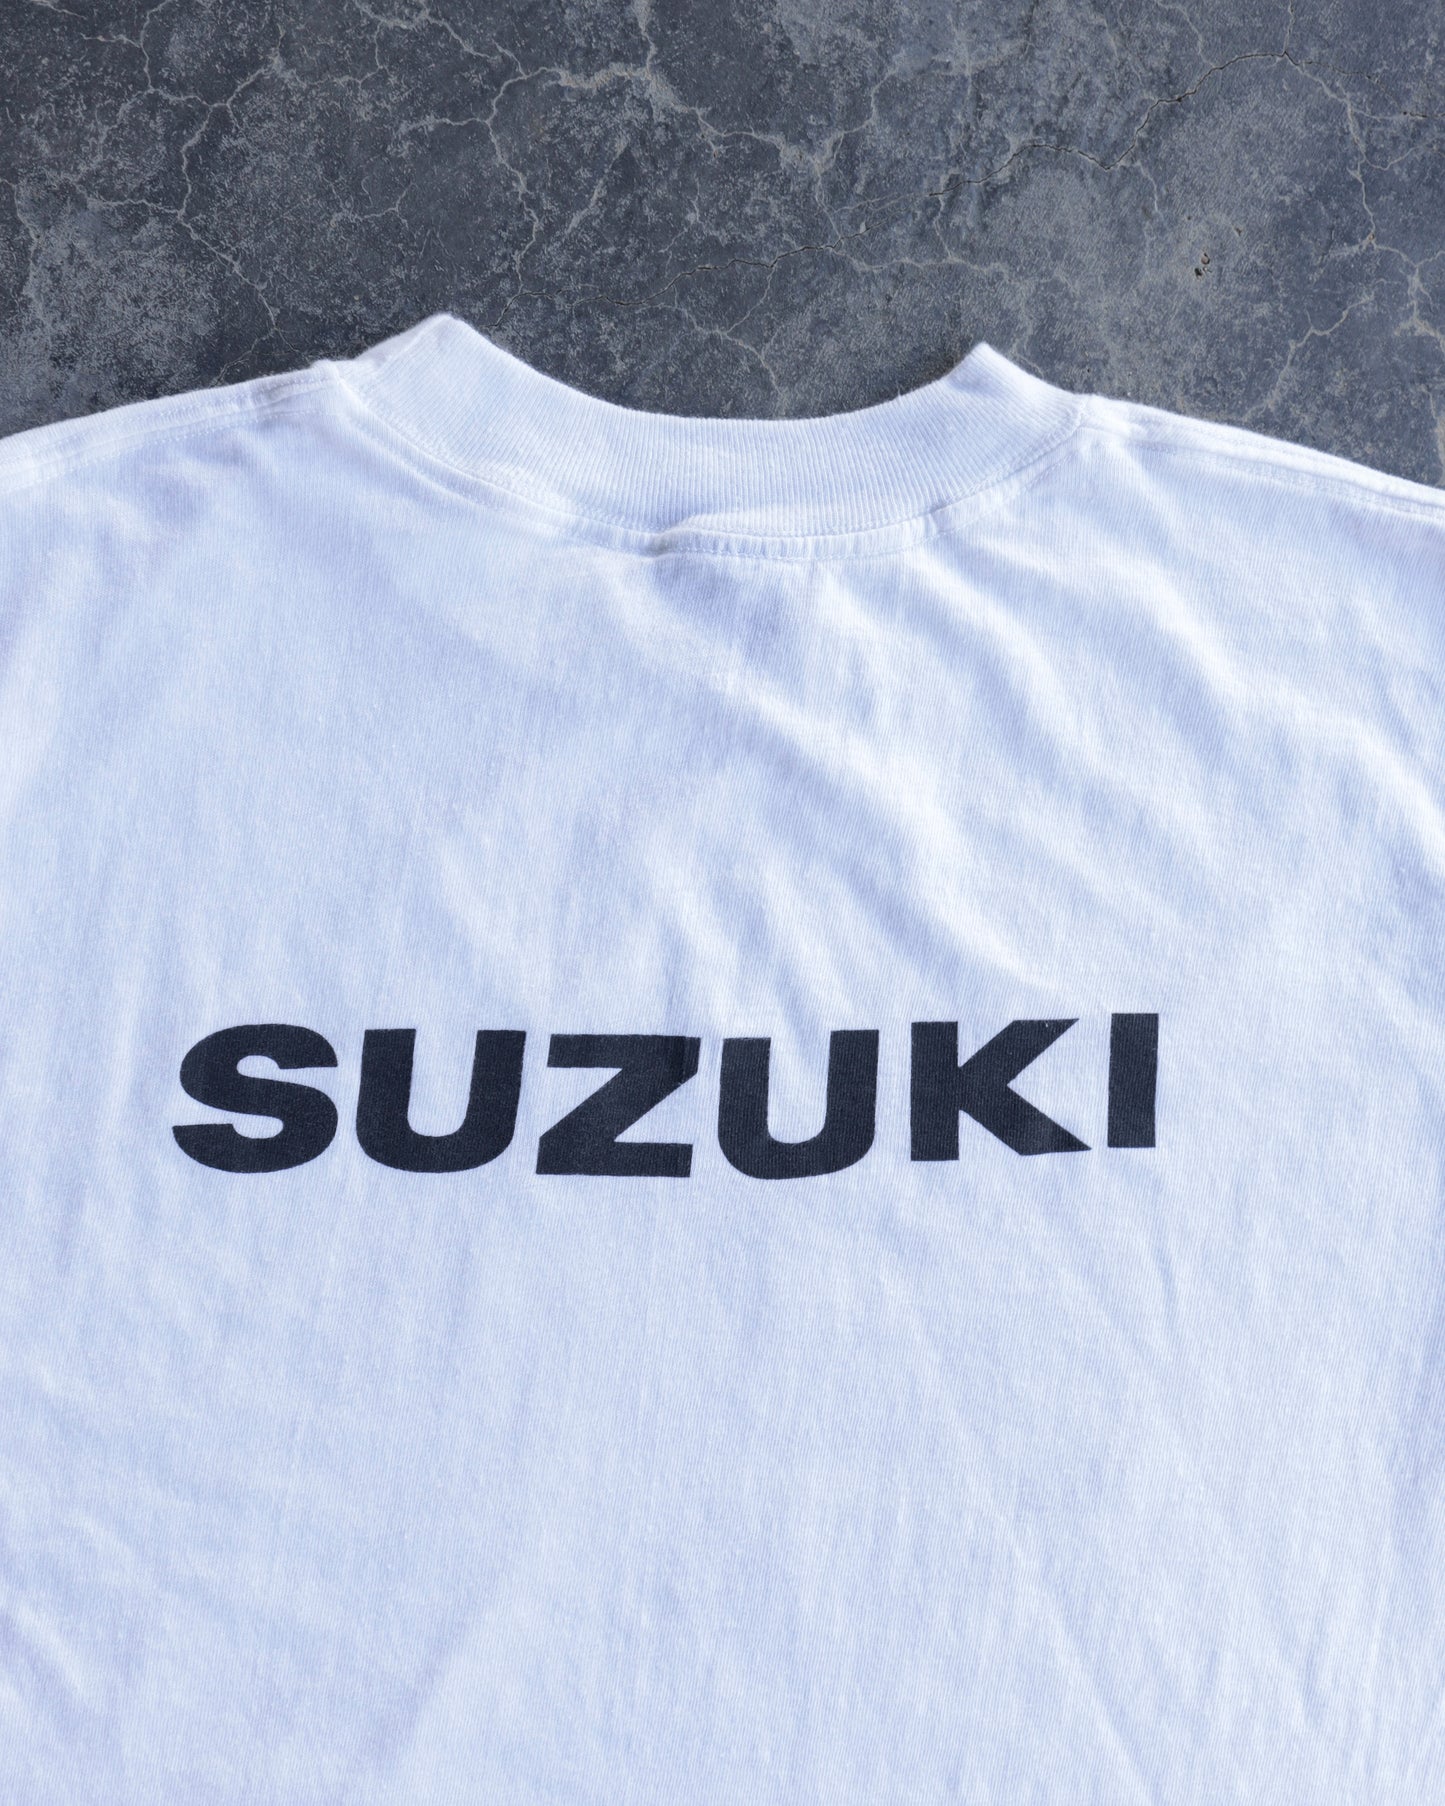 80s Suzuki Motorcycle White T-shirt - M